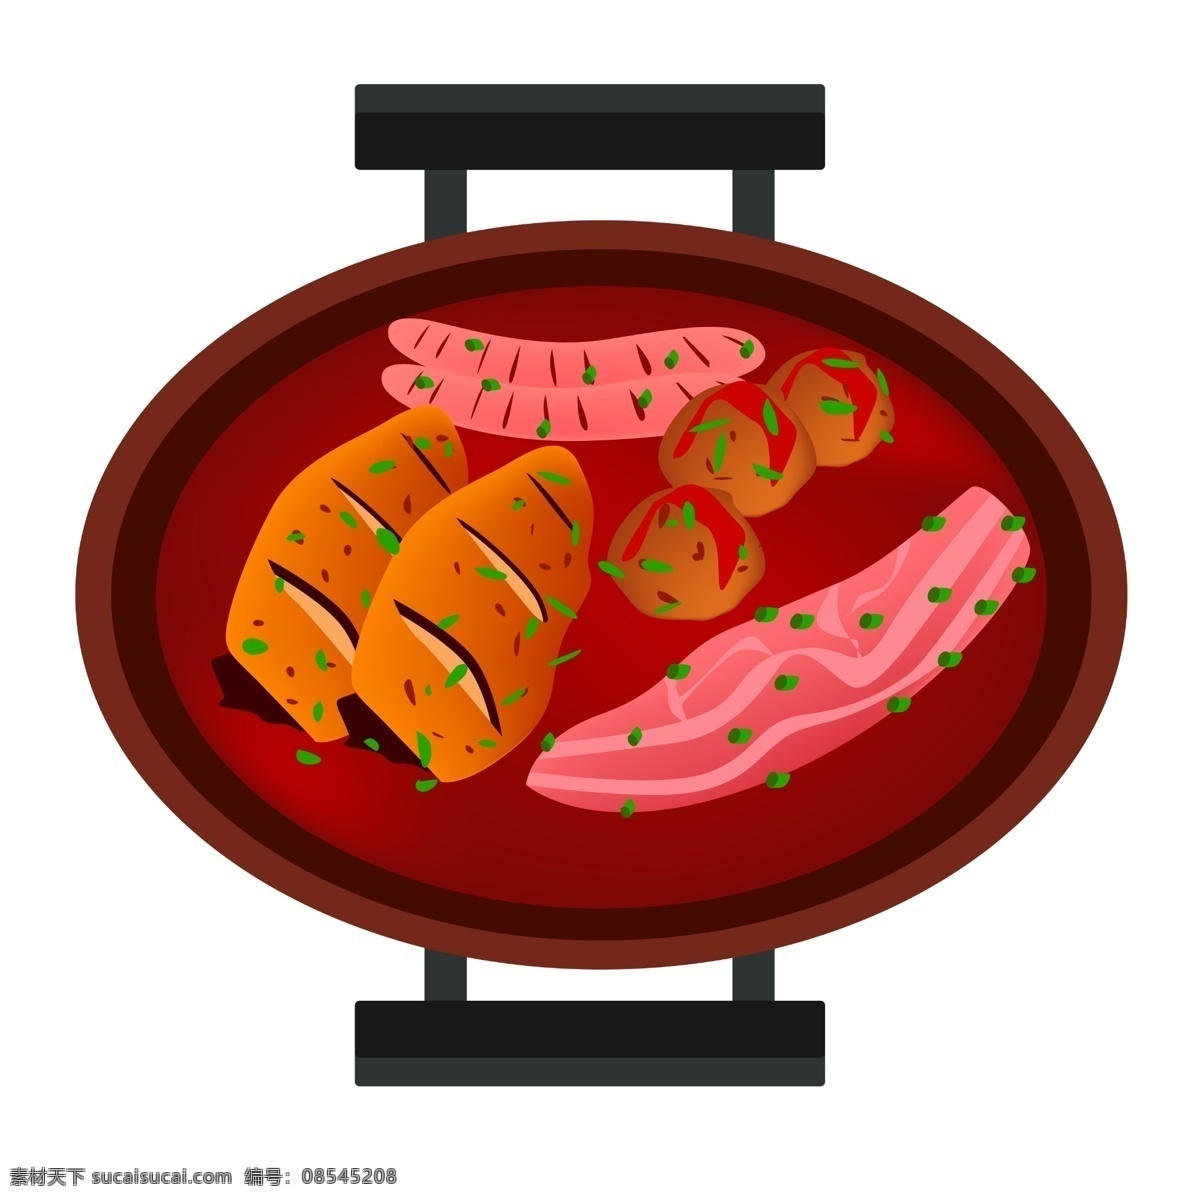 美味 烧烤 火锅 插画 美味烧烤 火锅插画 烤肠 肉类 食物 美食 香辣火锅 美食火锅 食物插图